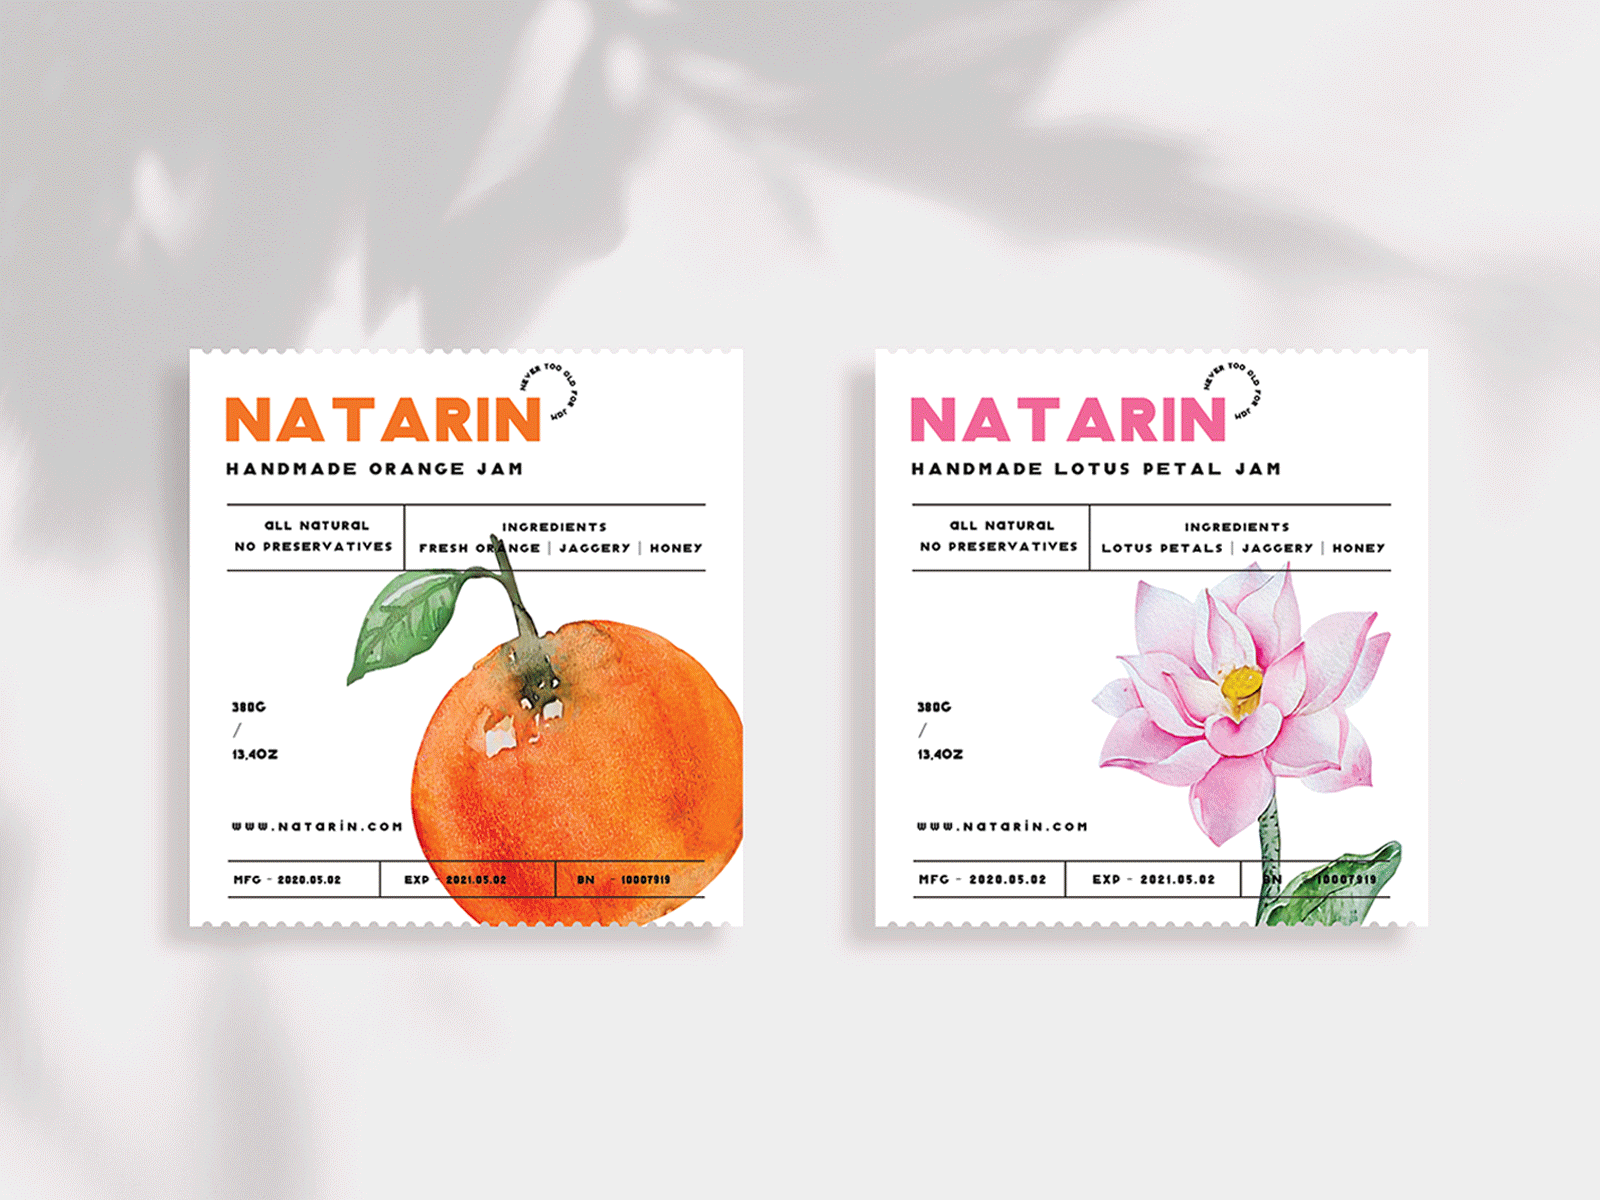 NATARIN adobeillustrator branding brandingdesign design illustration illustrator packagedesign packaging vietnam